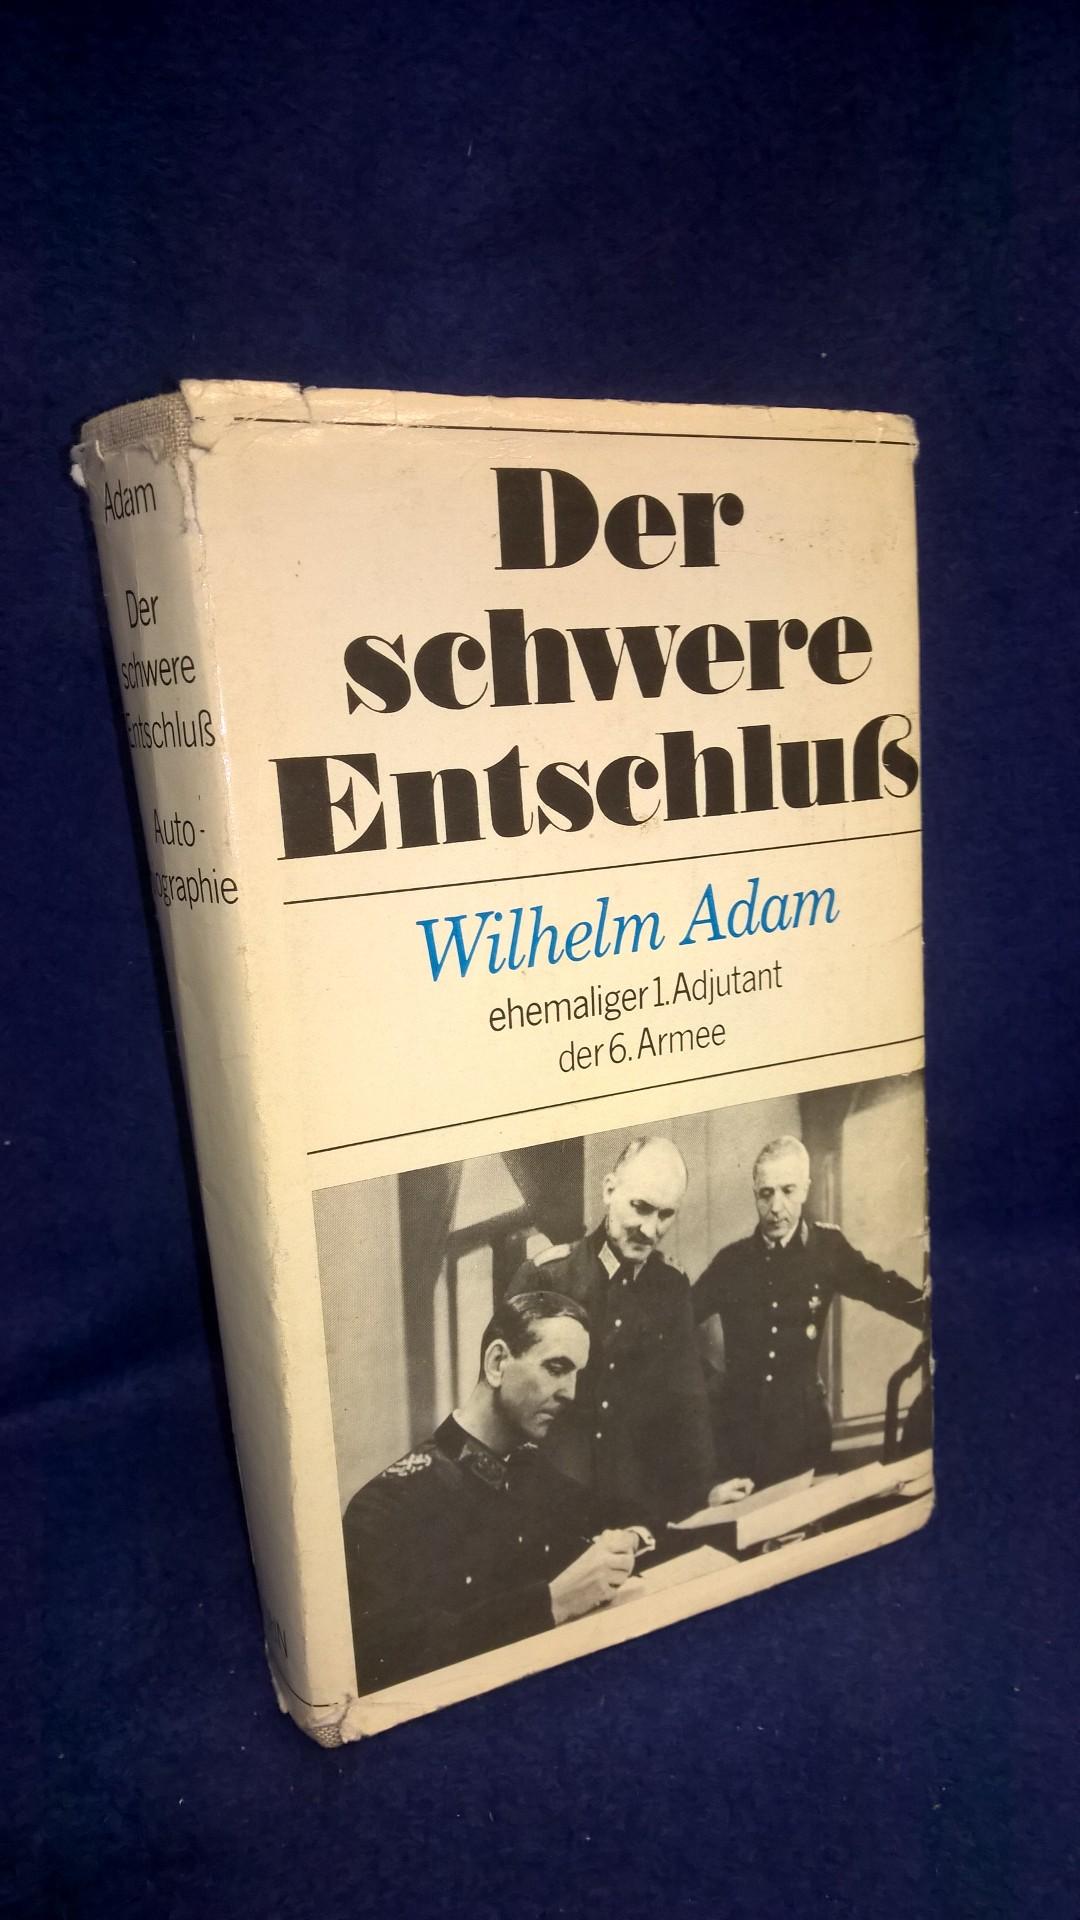 Der schwere Entschluß - Wilhelm Adam, ehemaliger 1. Adjutant der 6. Armee in Stalingrad. 